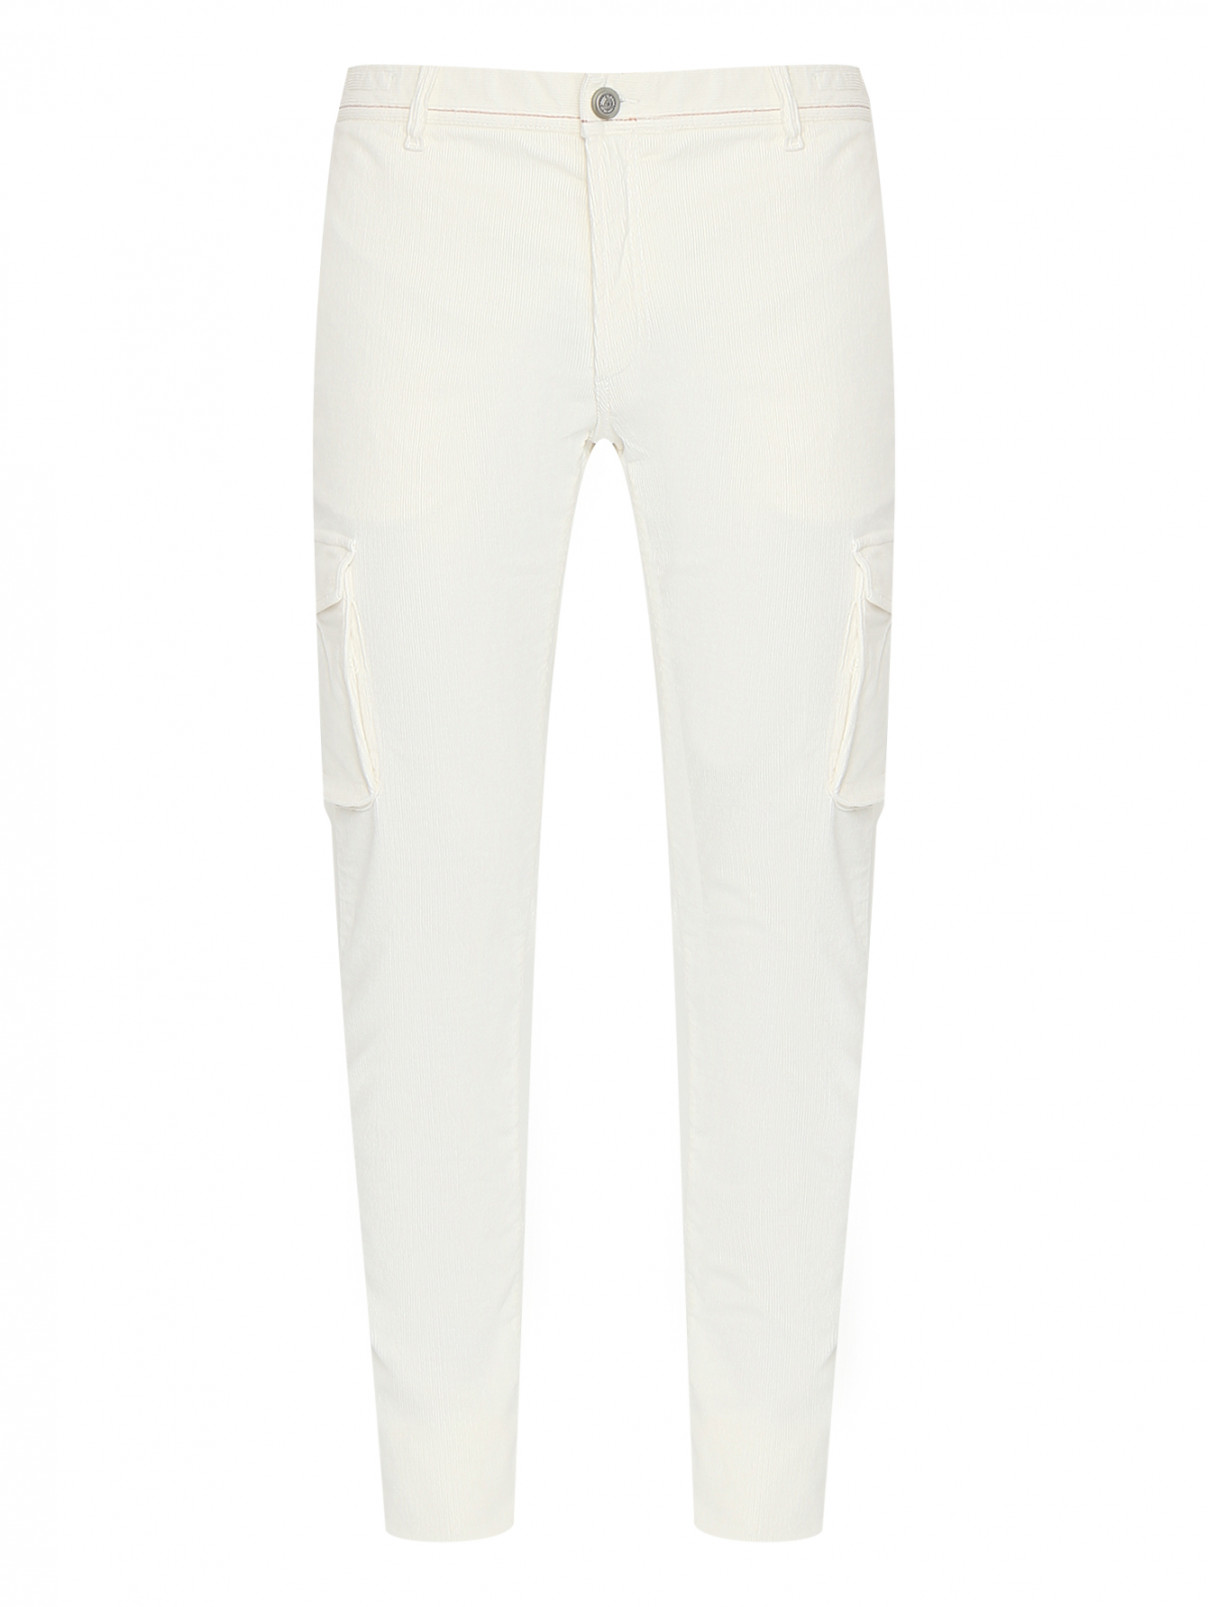 Вельветовые брюки с накладными карманами Richard J. Brown  –  Общий вид  – Цвет:  Белый